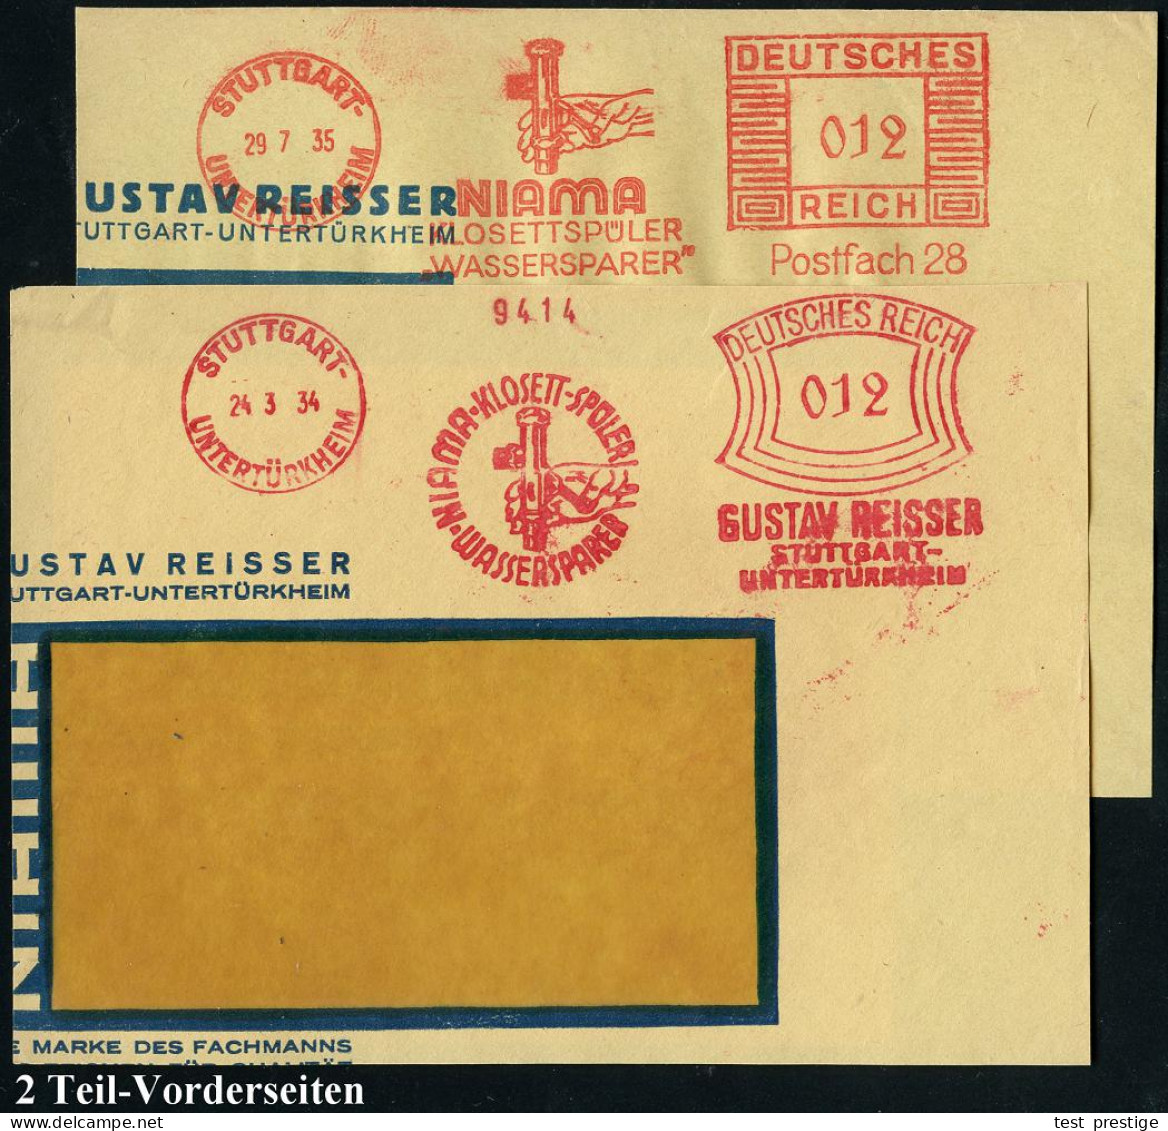 STUTTGART-/ UNTERTÜRKHEIM/ NIAMA-KLOSETT-SPÜLER/ WASSERSPAREN/ GUSTAV REISSER.. 1934/35 2 Ver-schiedene AFS Francotyp "B - Autres